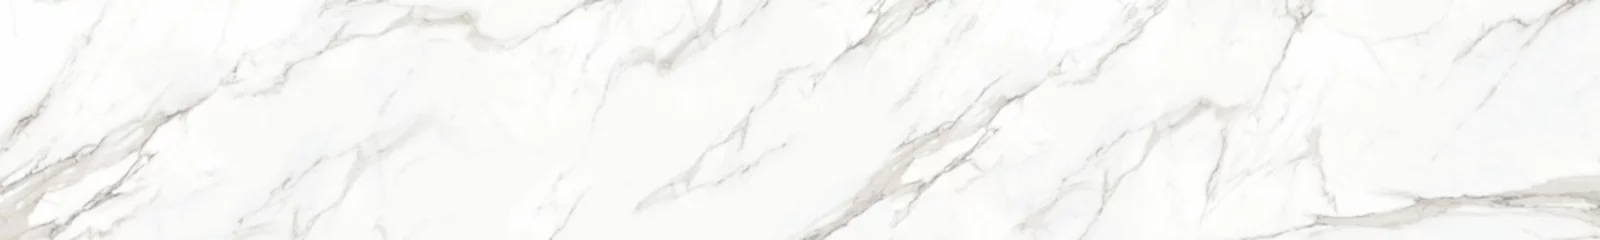 Fototapete Marmor Panorama aus weißem Marmorstein